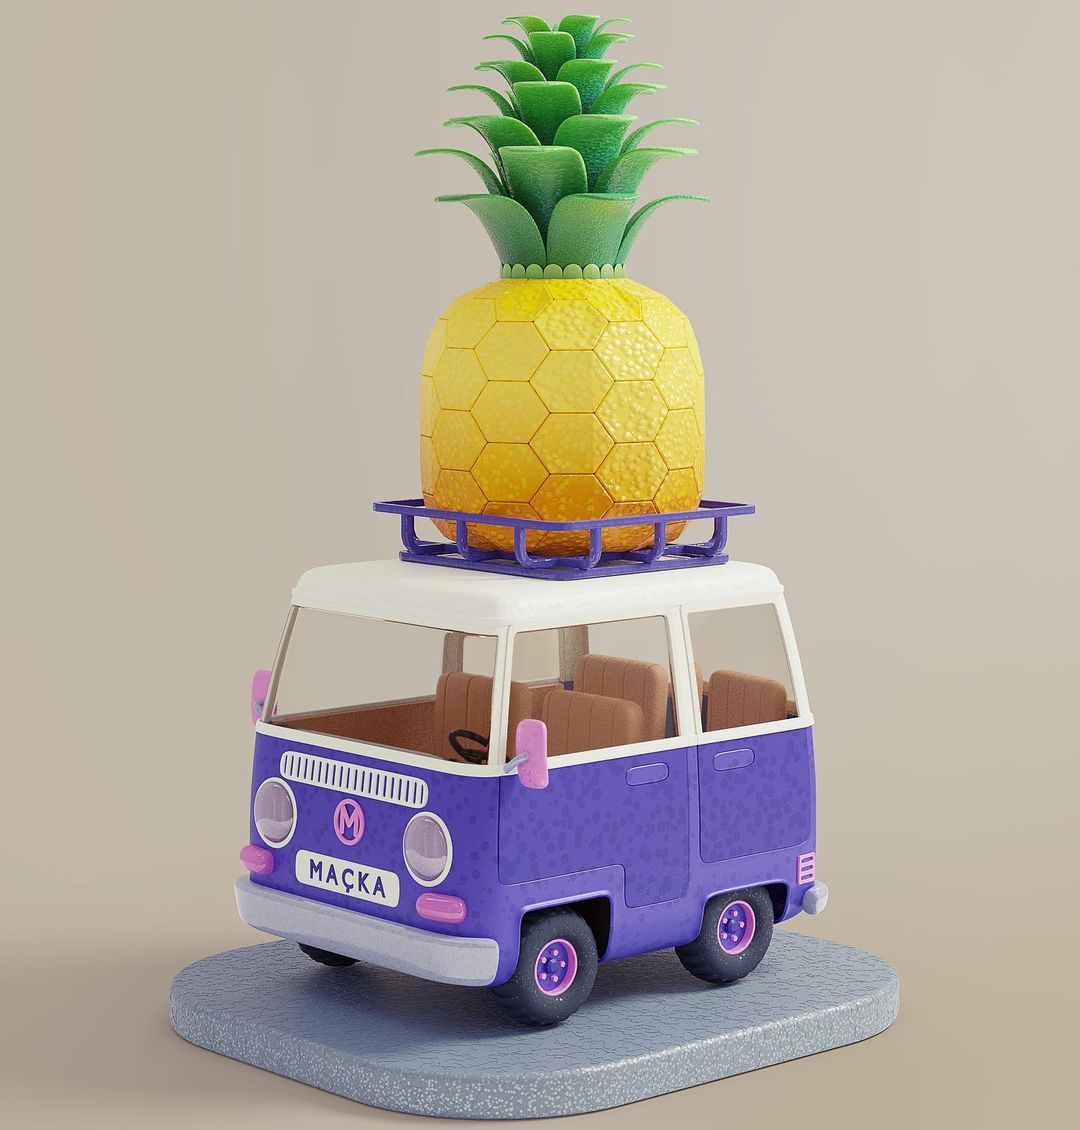 Mini Bus Macka and Ananas on top